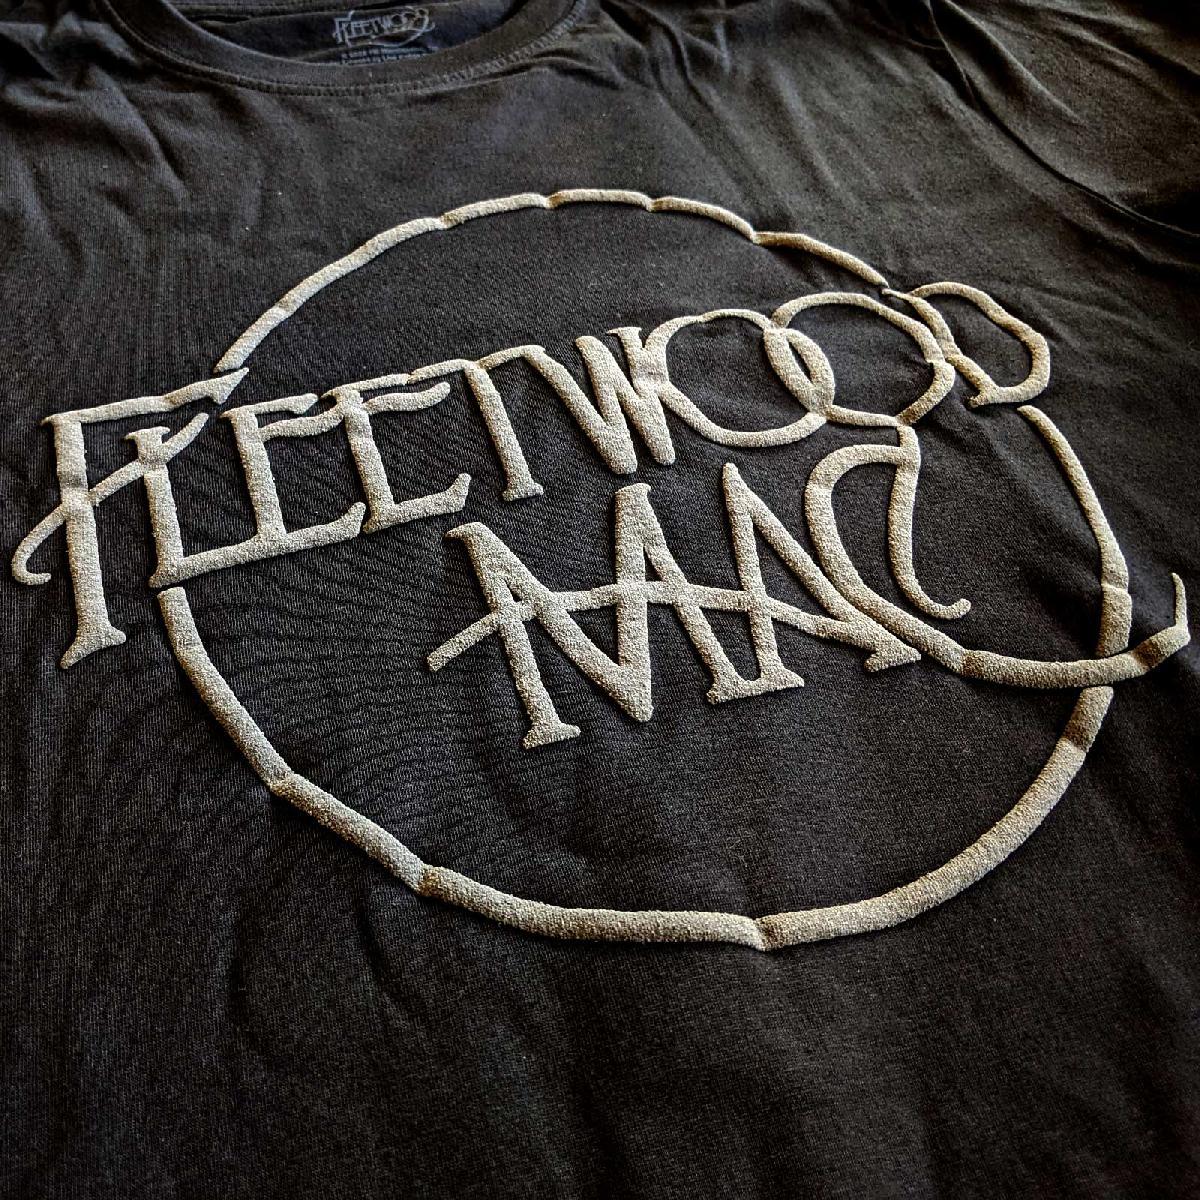 FLEETWOOD MAC Classic Logo